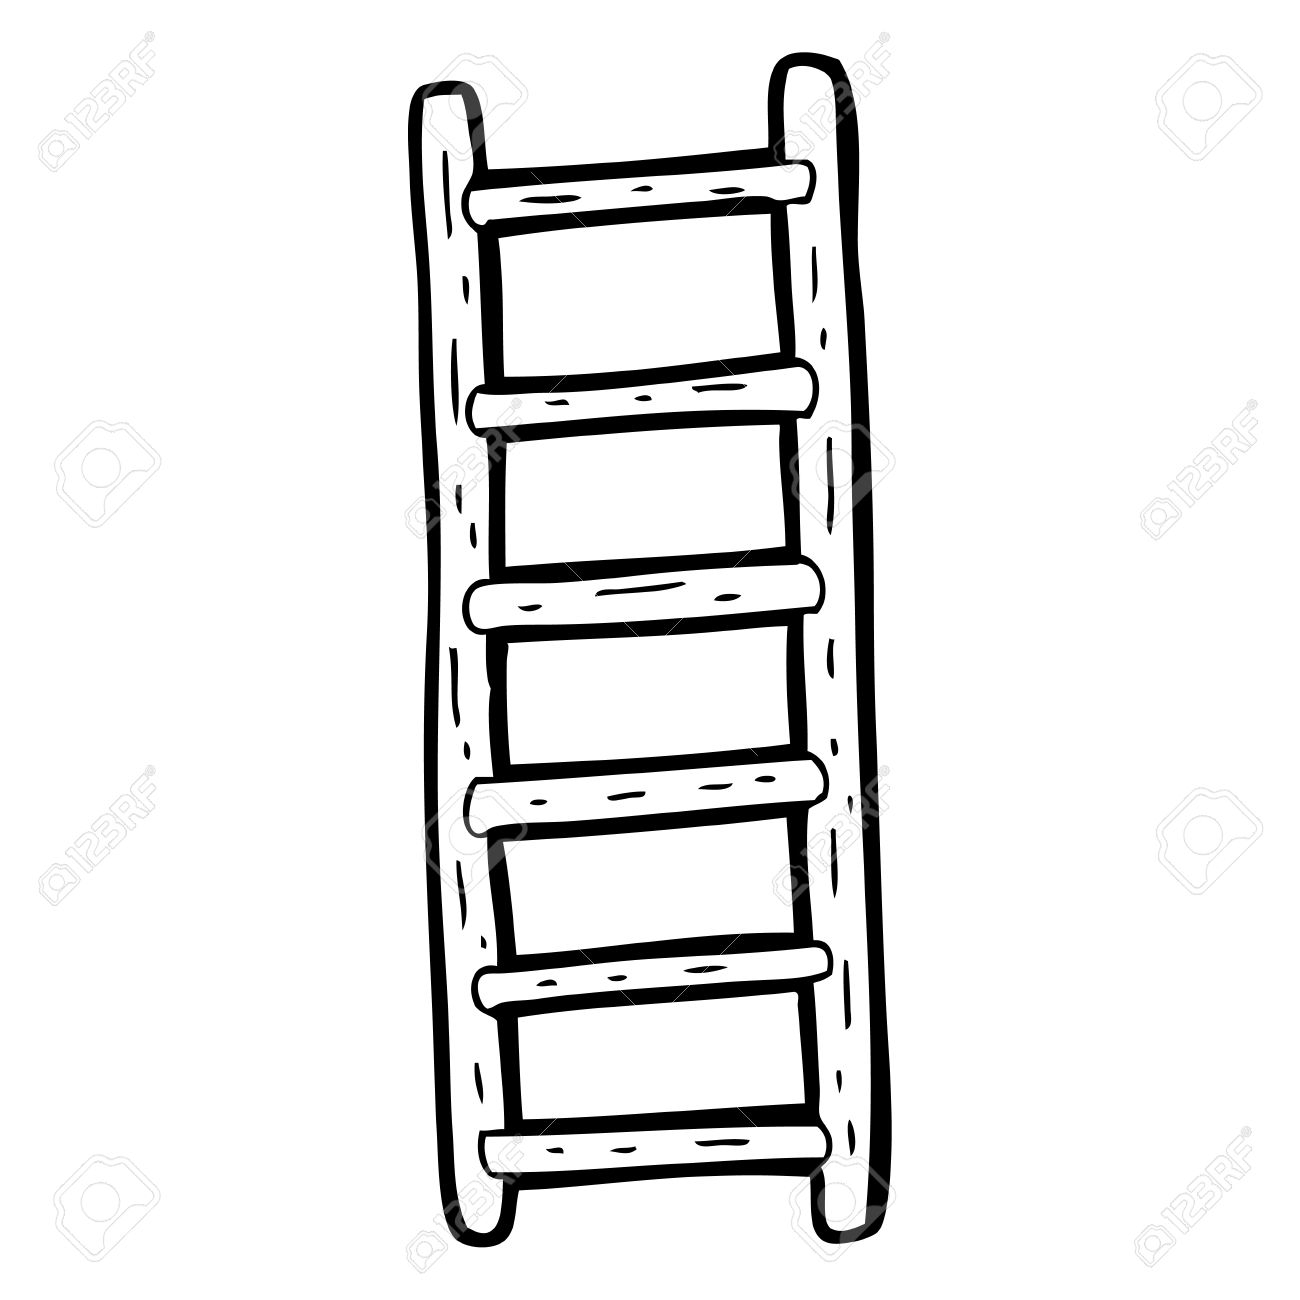 Ladder clipart, Ladder Transparent FREE for download on